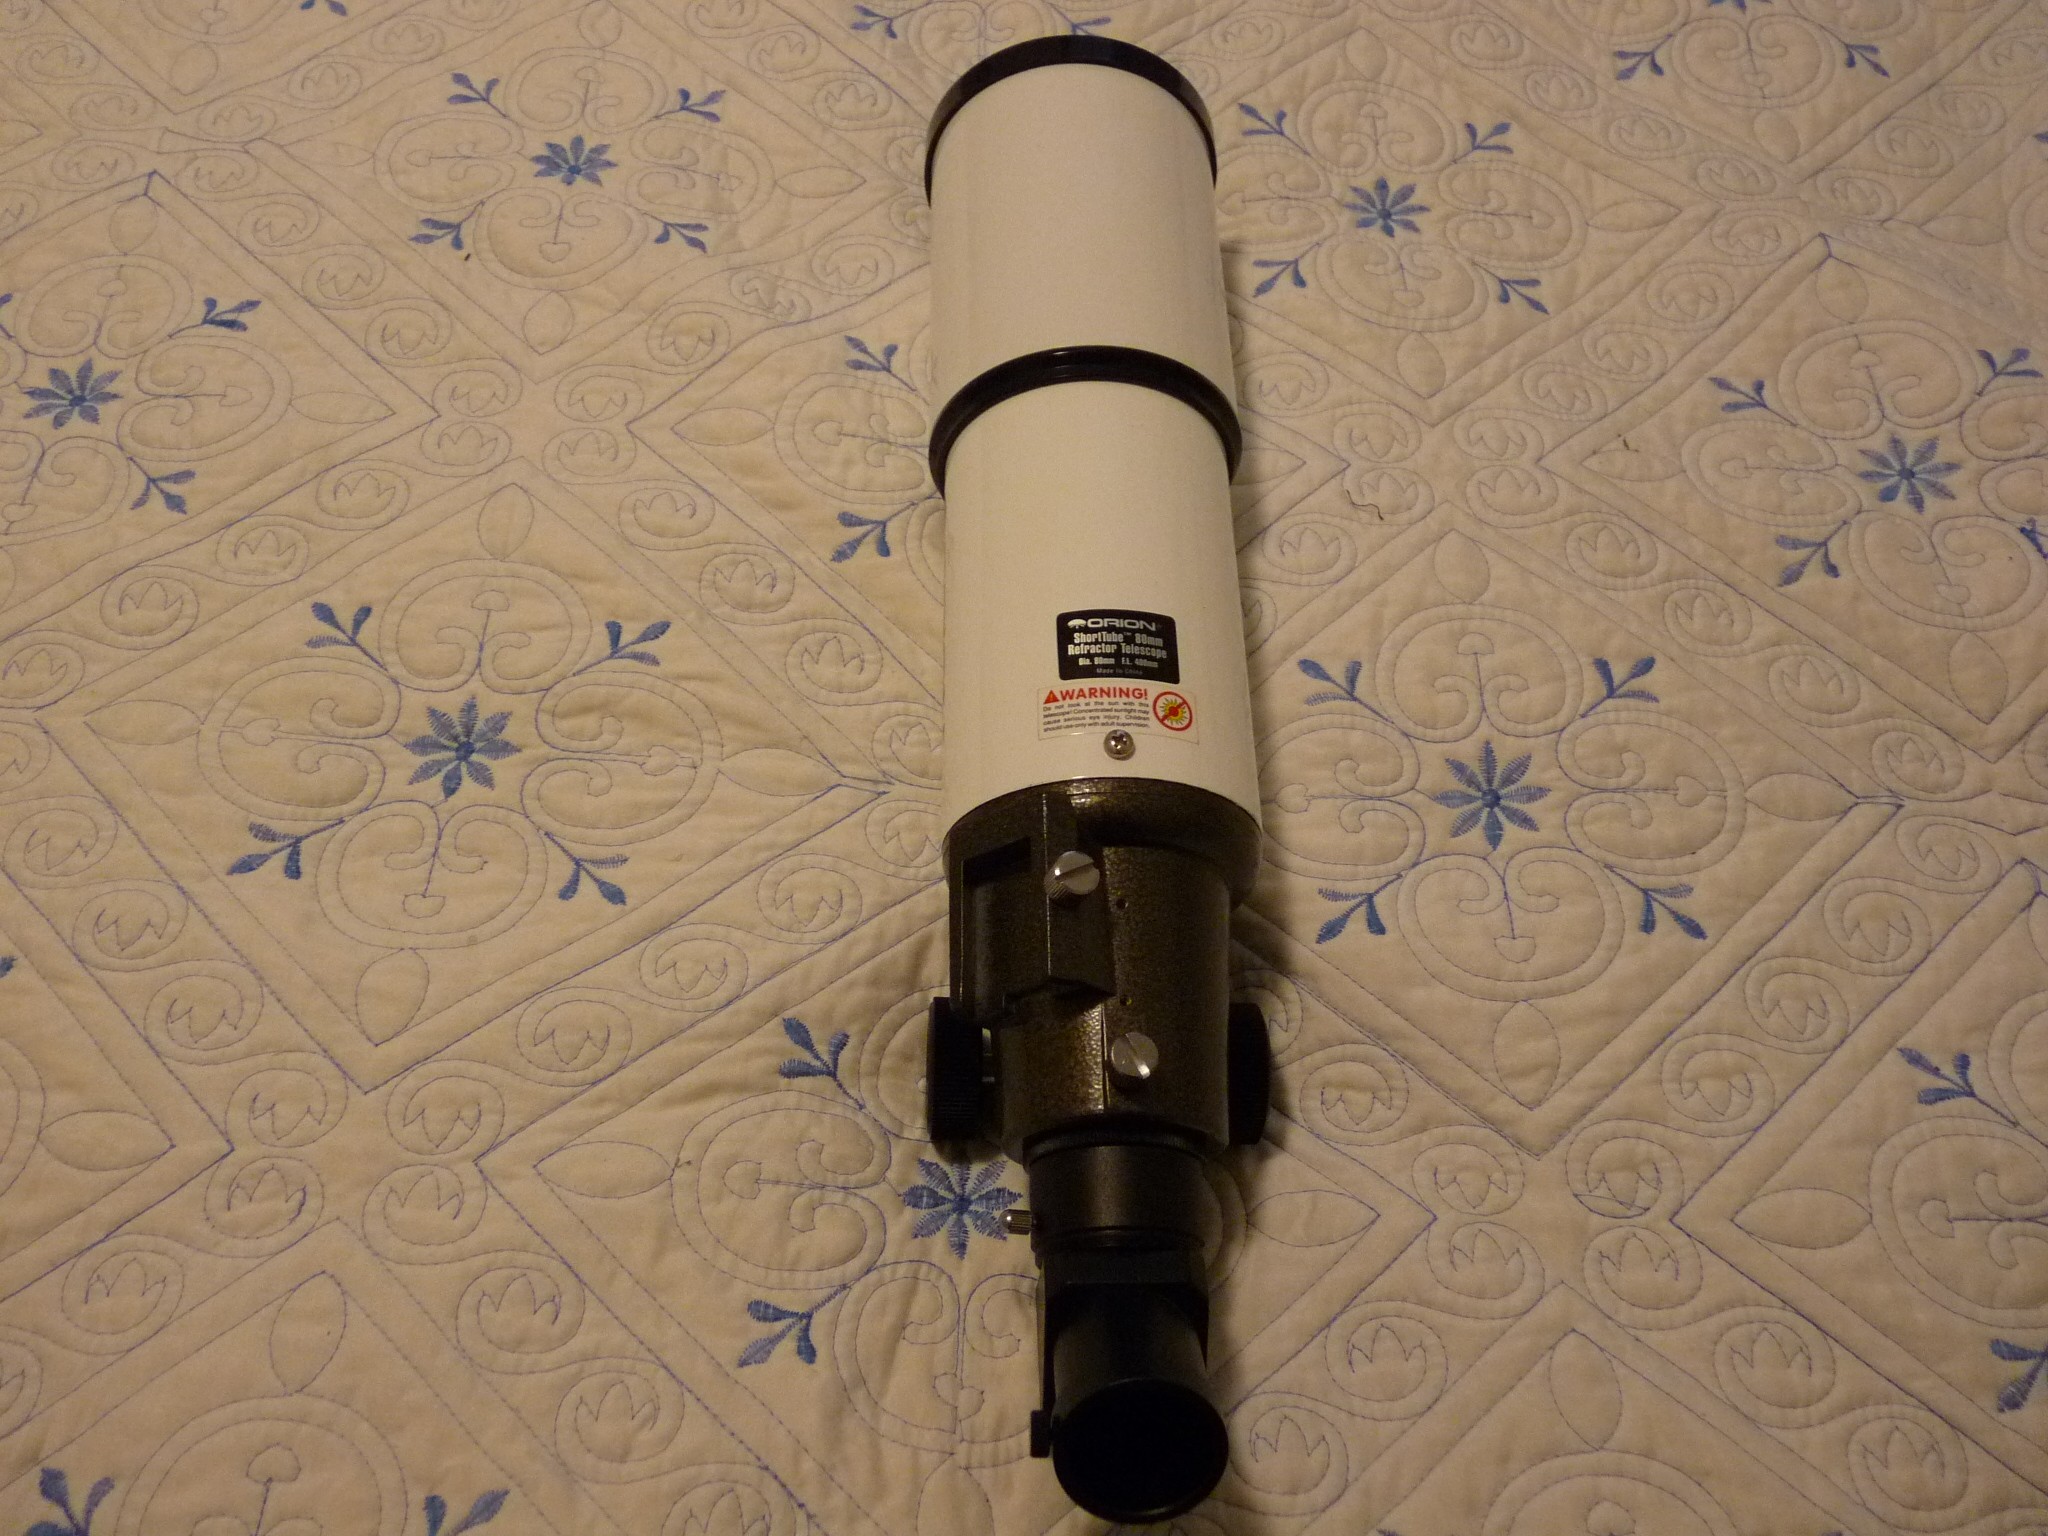 Orion 80 mm Short Tube Refractor | Astromart Orion Short Tube 80mm Refractor Telescope